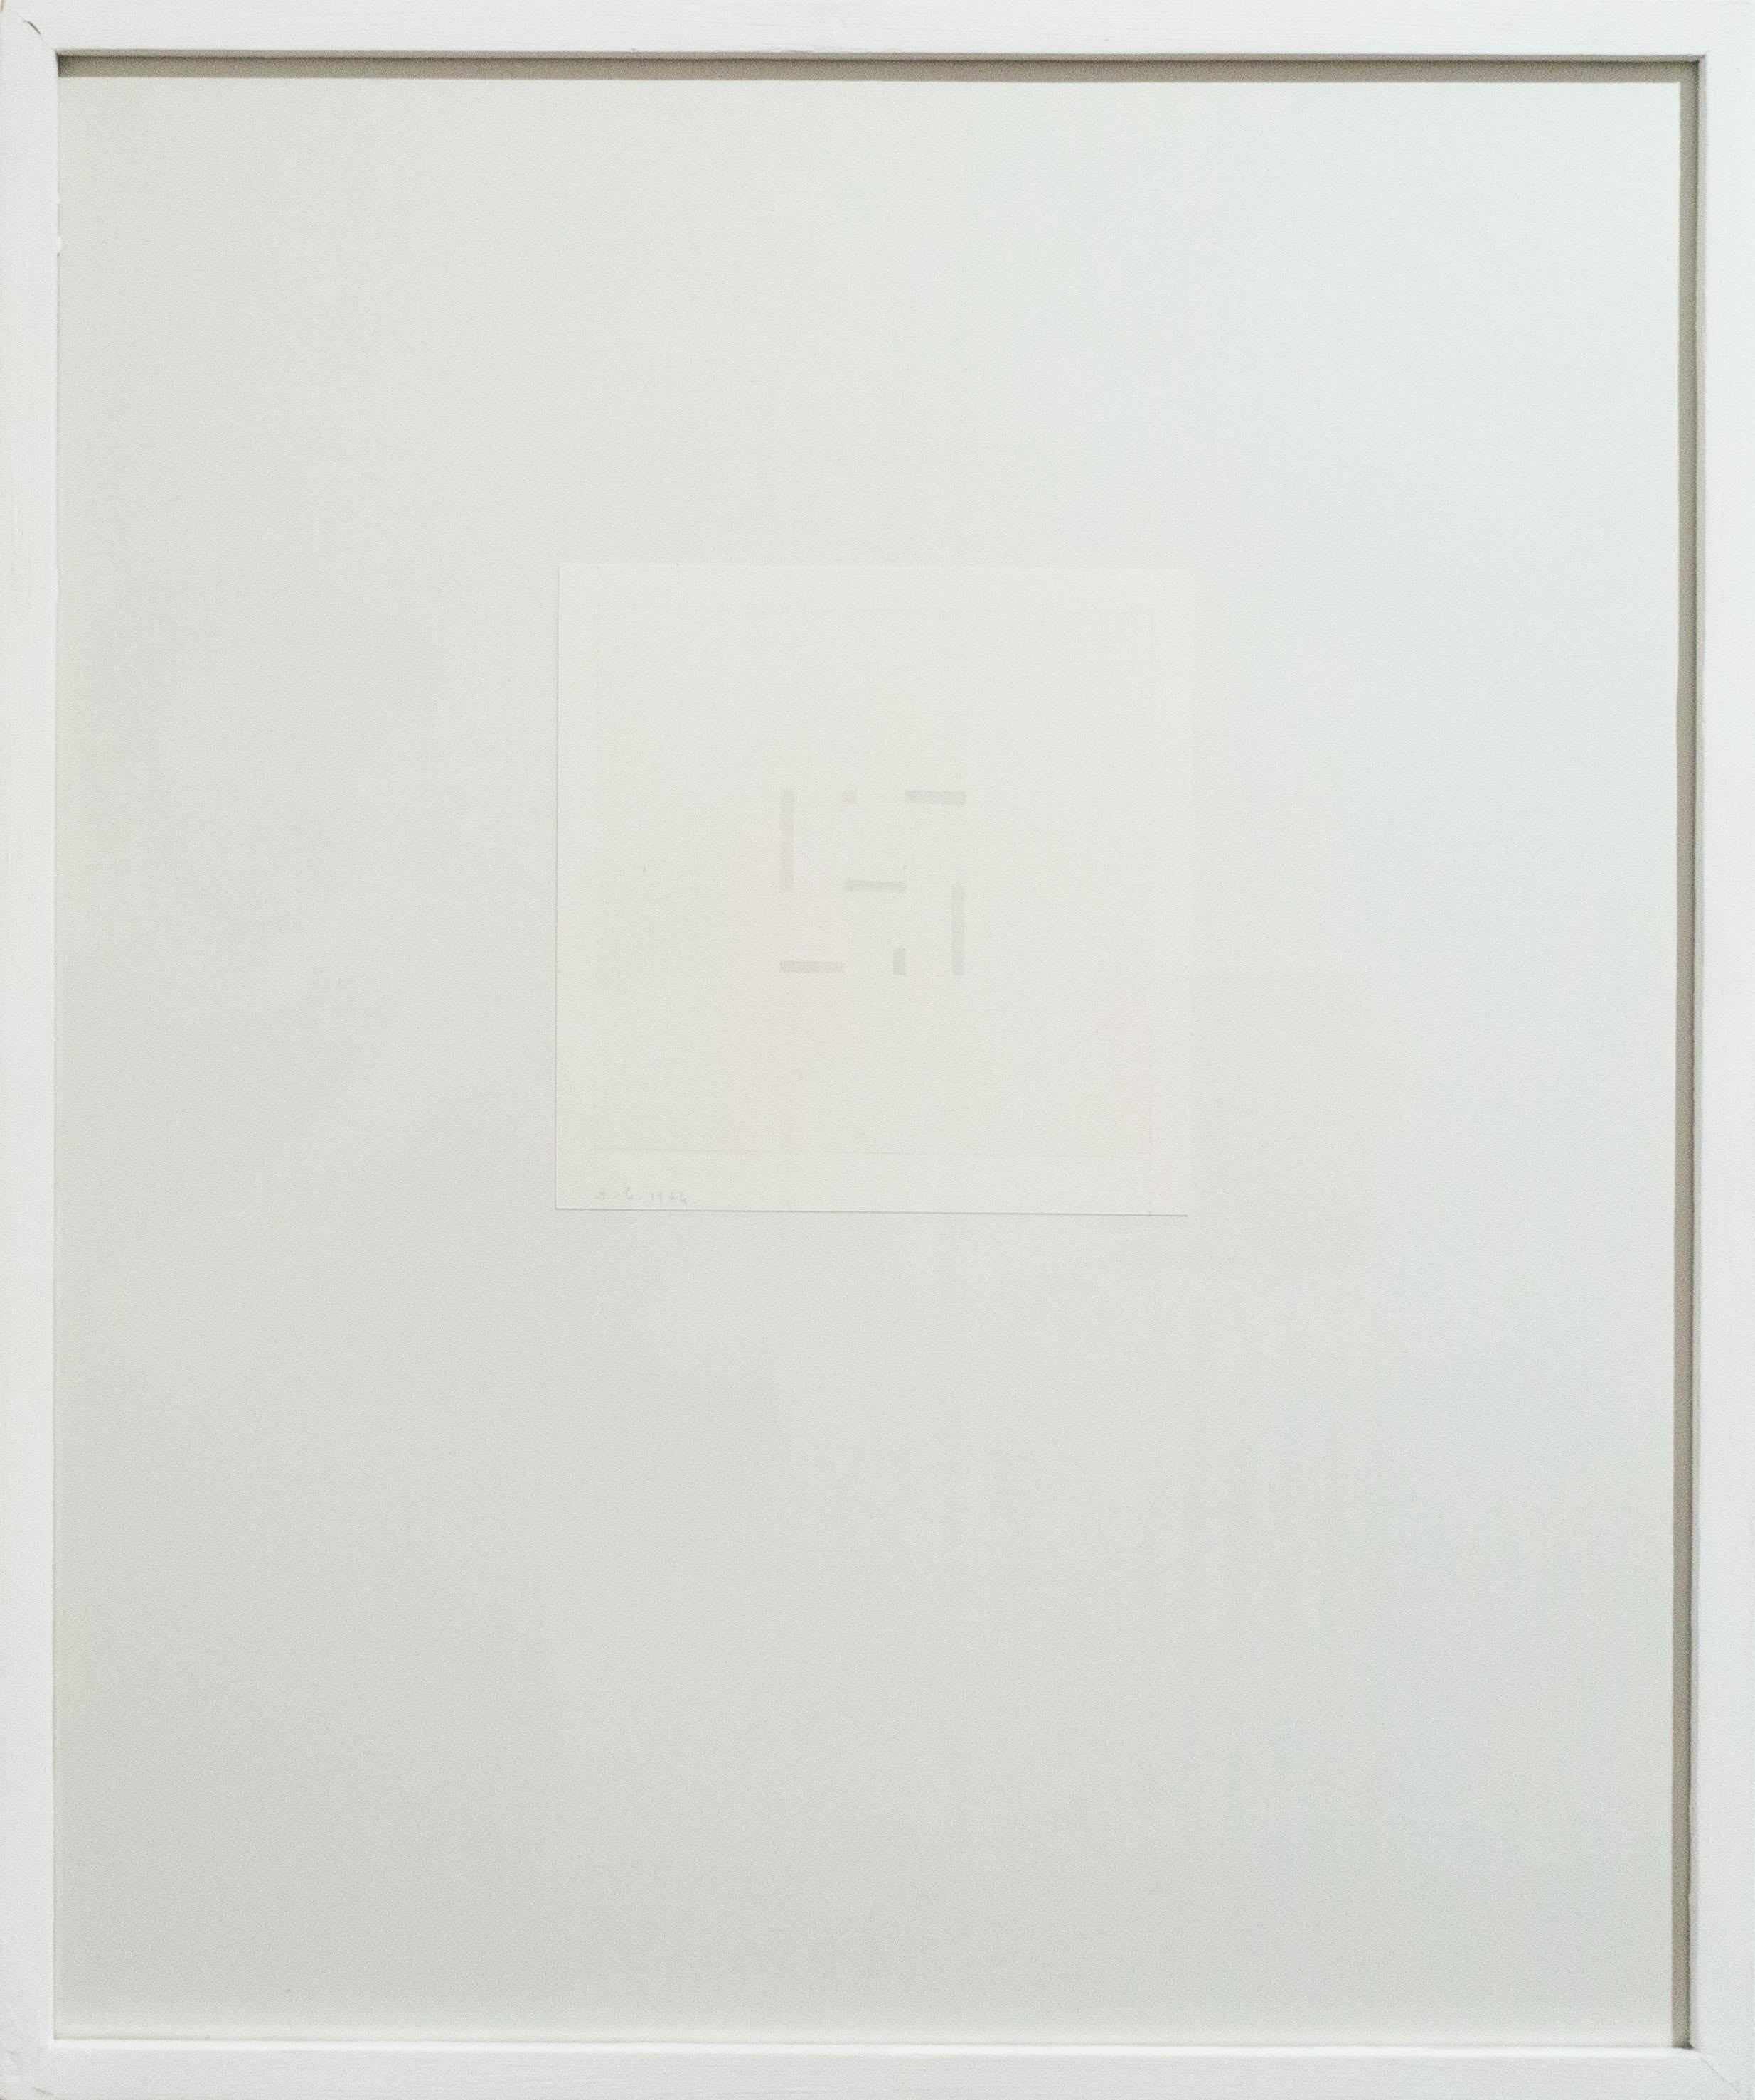 Graue Konstellation A, Abstraktion, italienische Kunst, Minimalismus 1974 – Art von Antonio Calderara